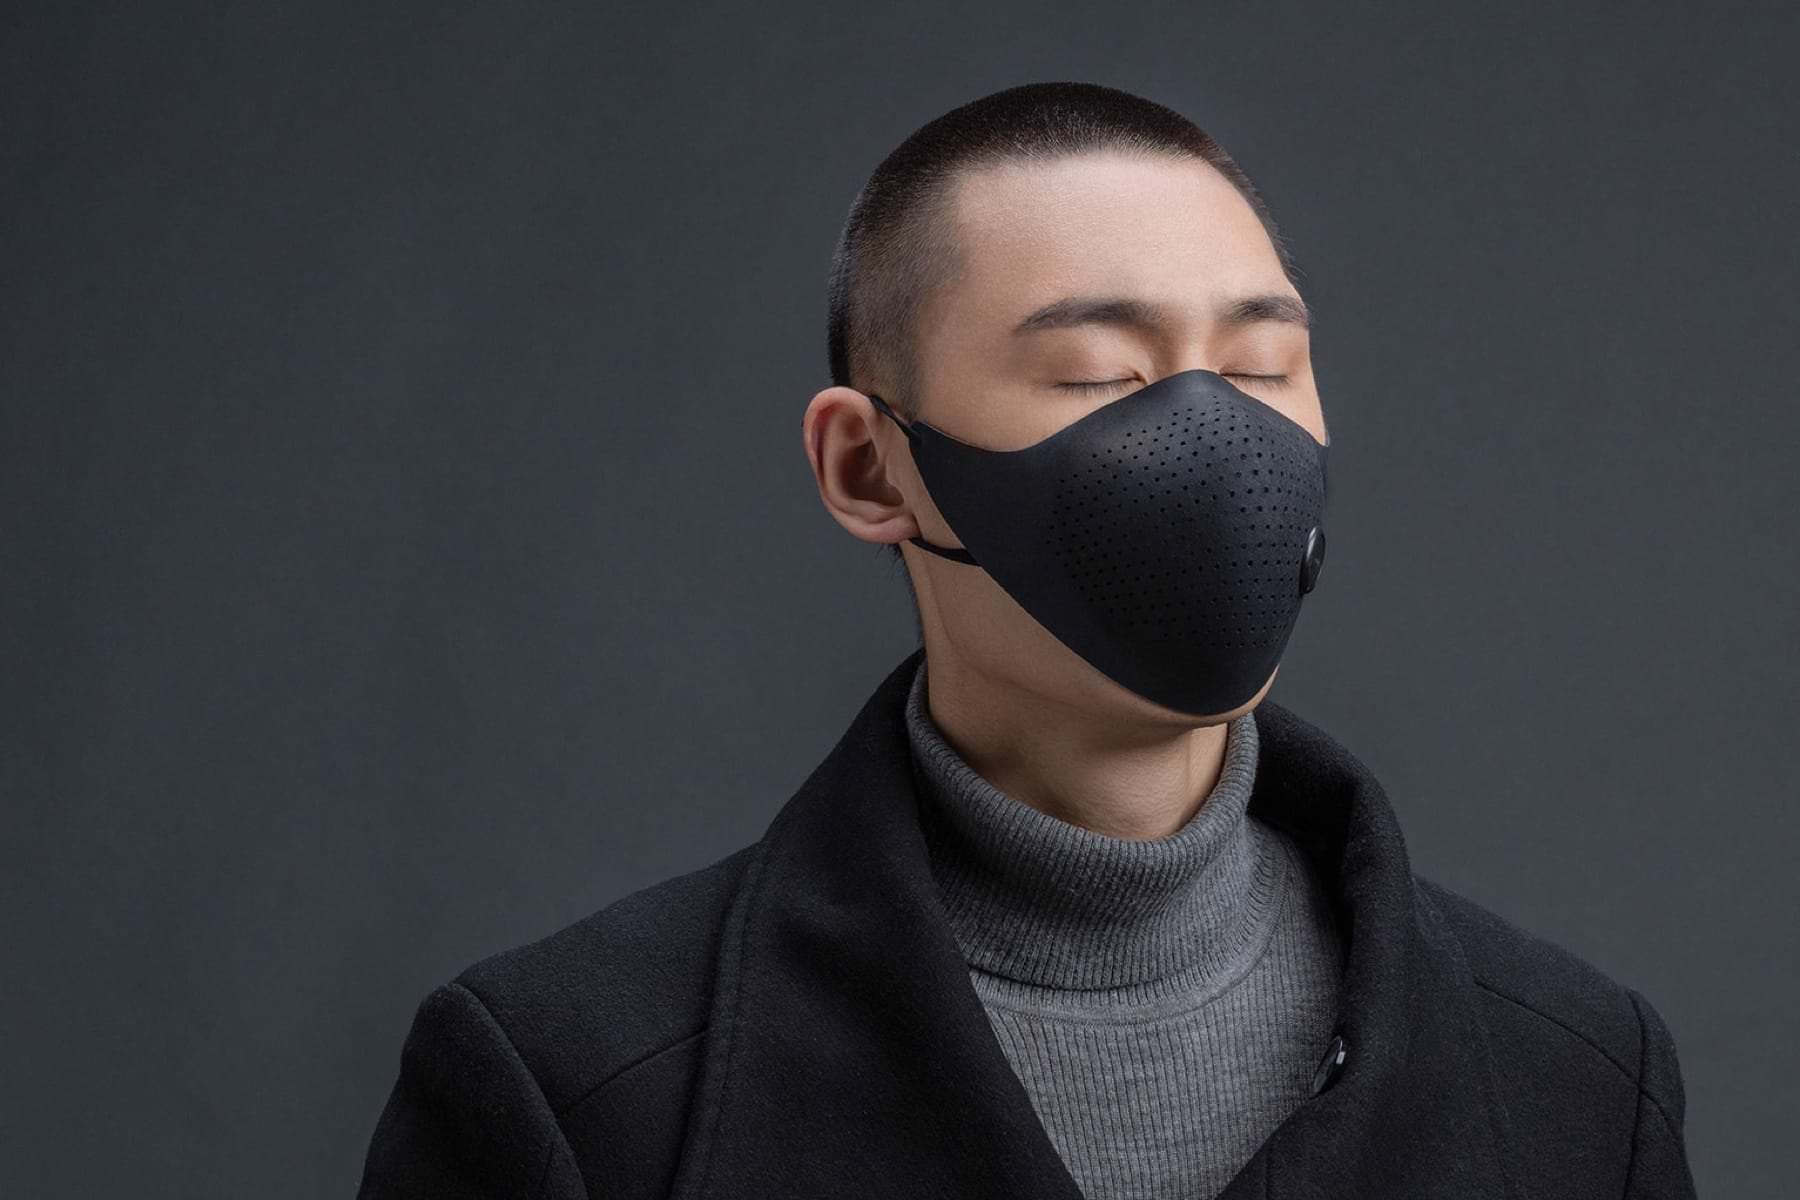 Компания Xioami создает «умную» маску со счетчиком вдыхаемого загрязненного воздуха